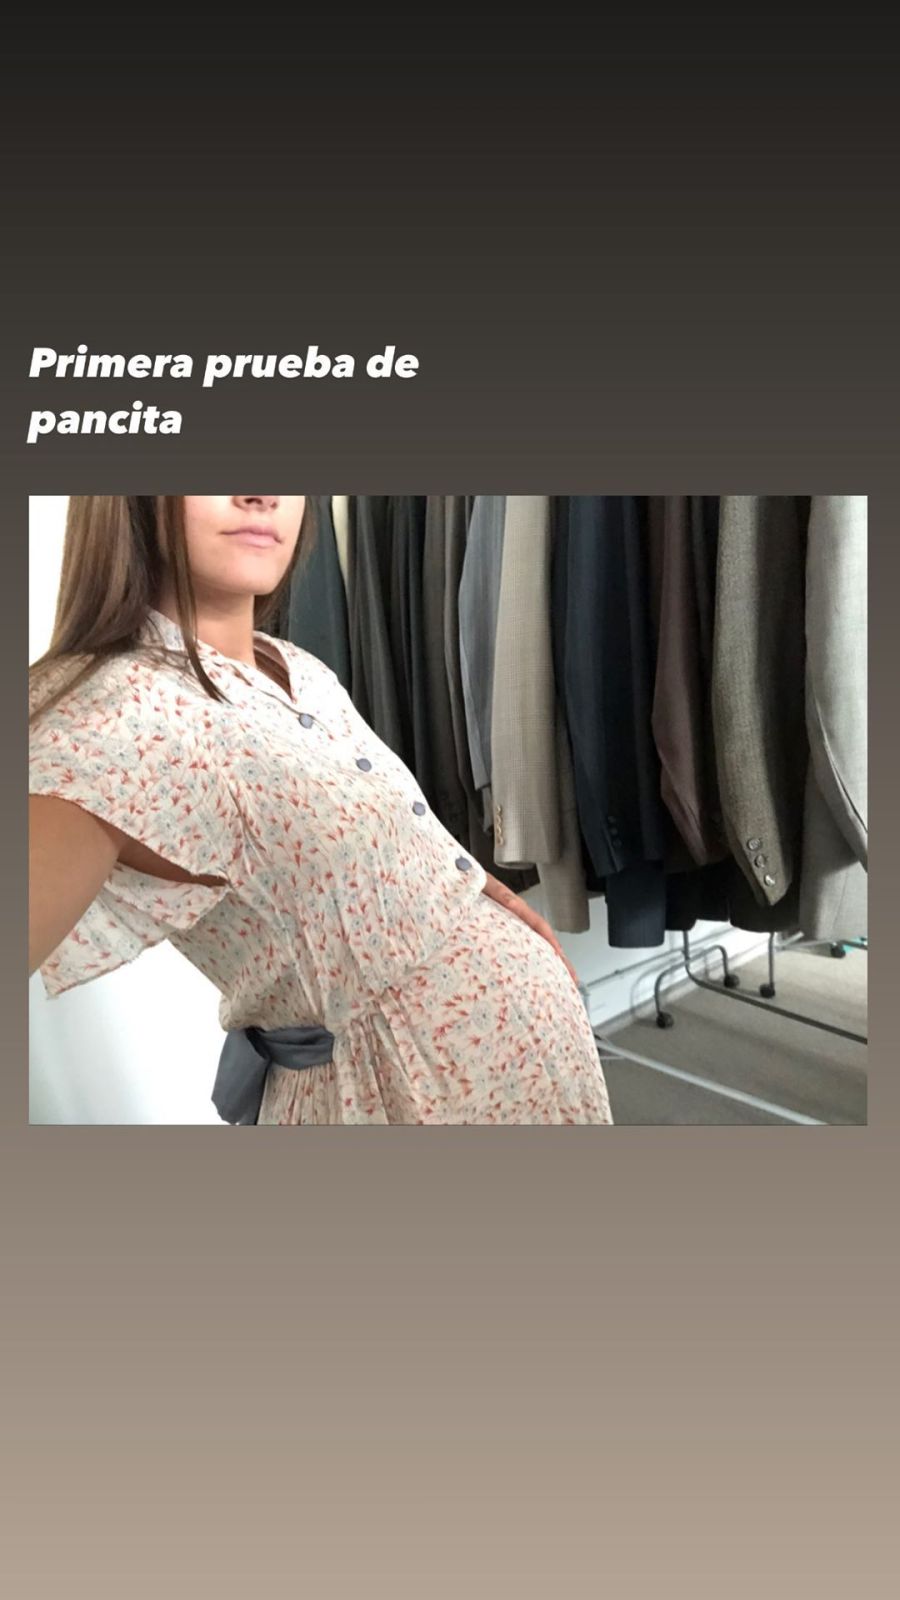 Oriana Sabatini se mostró con pancita de embarazada y causó furor en las redes sociales